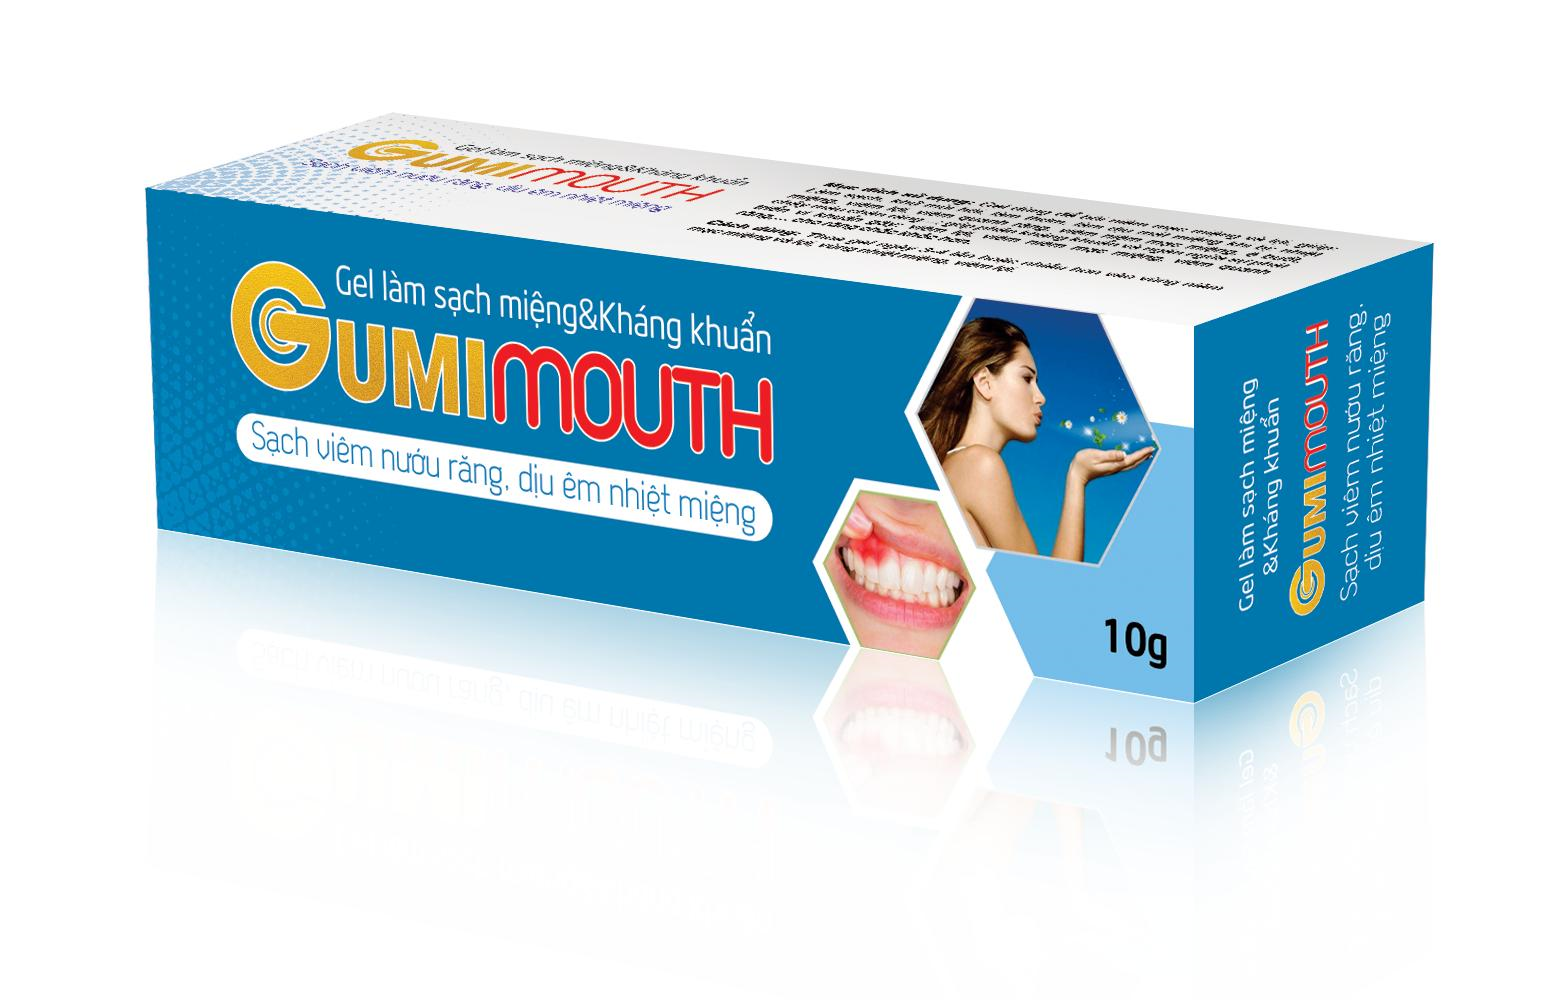 GUMIMOUTH - Giải pháp thiên nhiên cải thiện bệnh nhiệt miệng